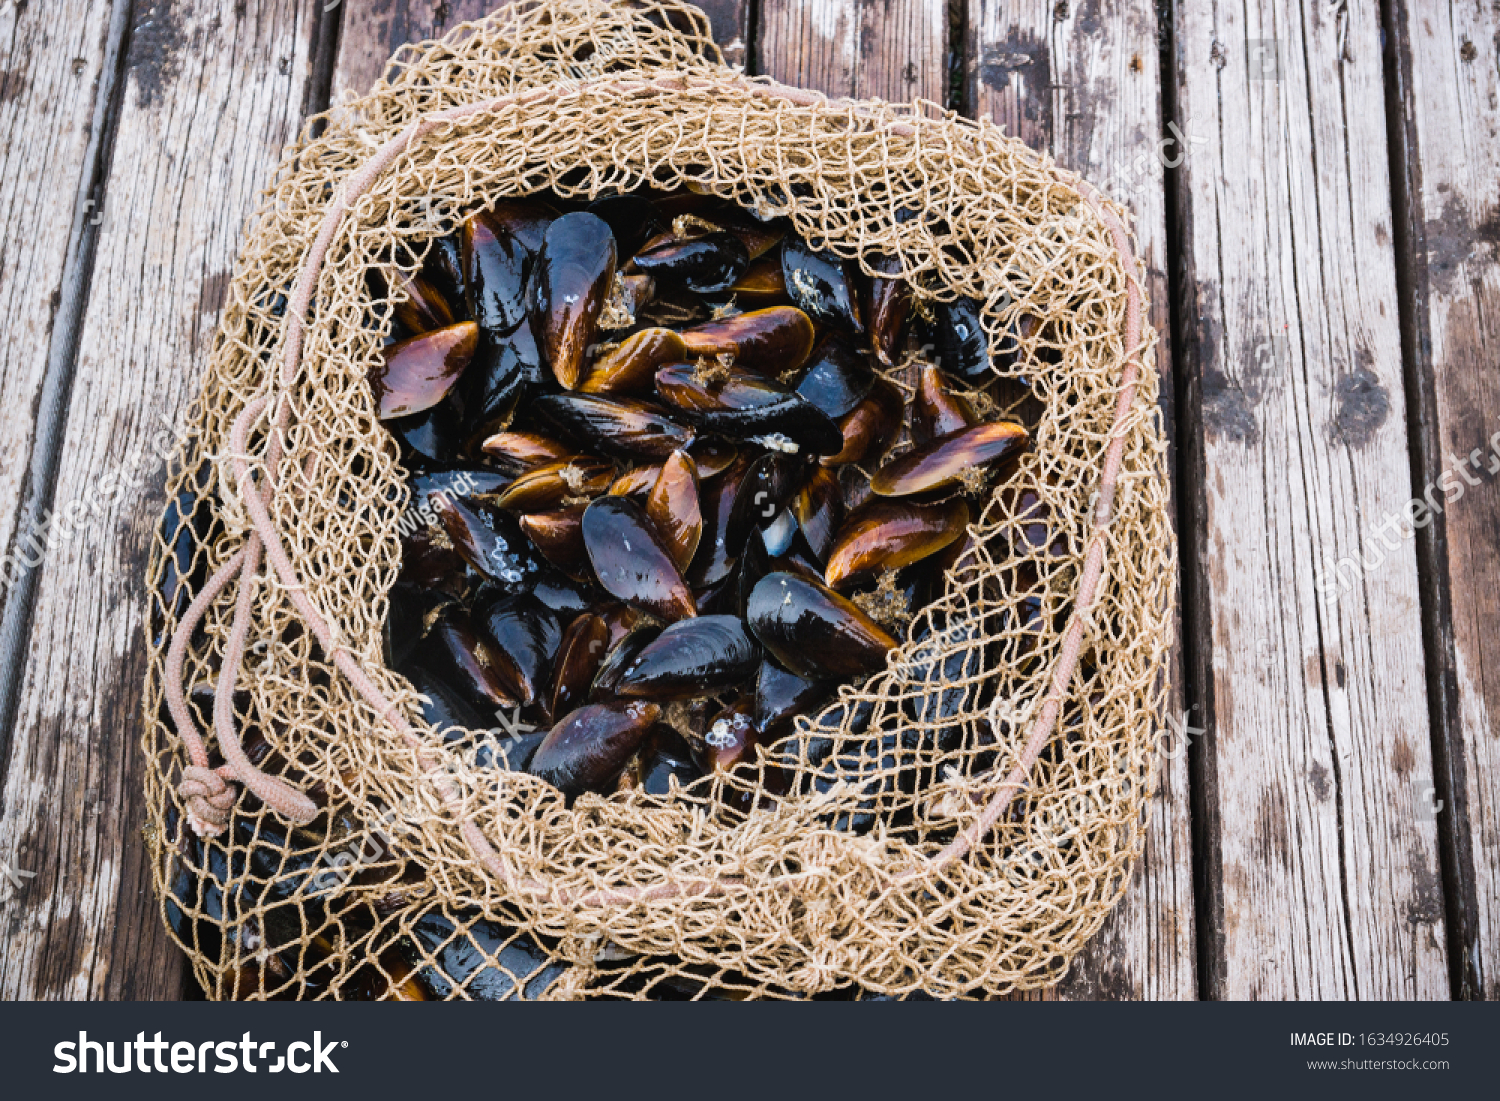 Mussels in shells lie in a fishing net on a pier #1634926405